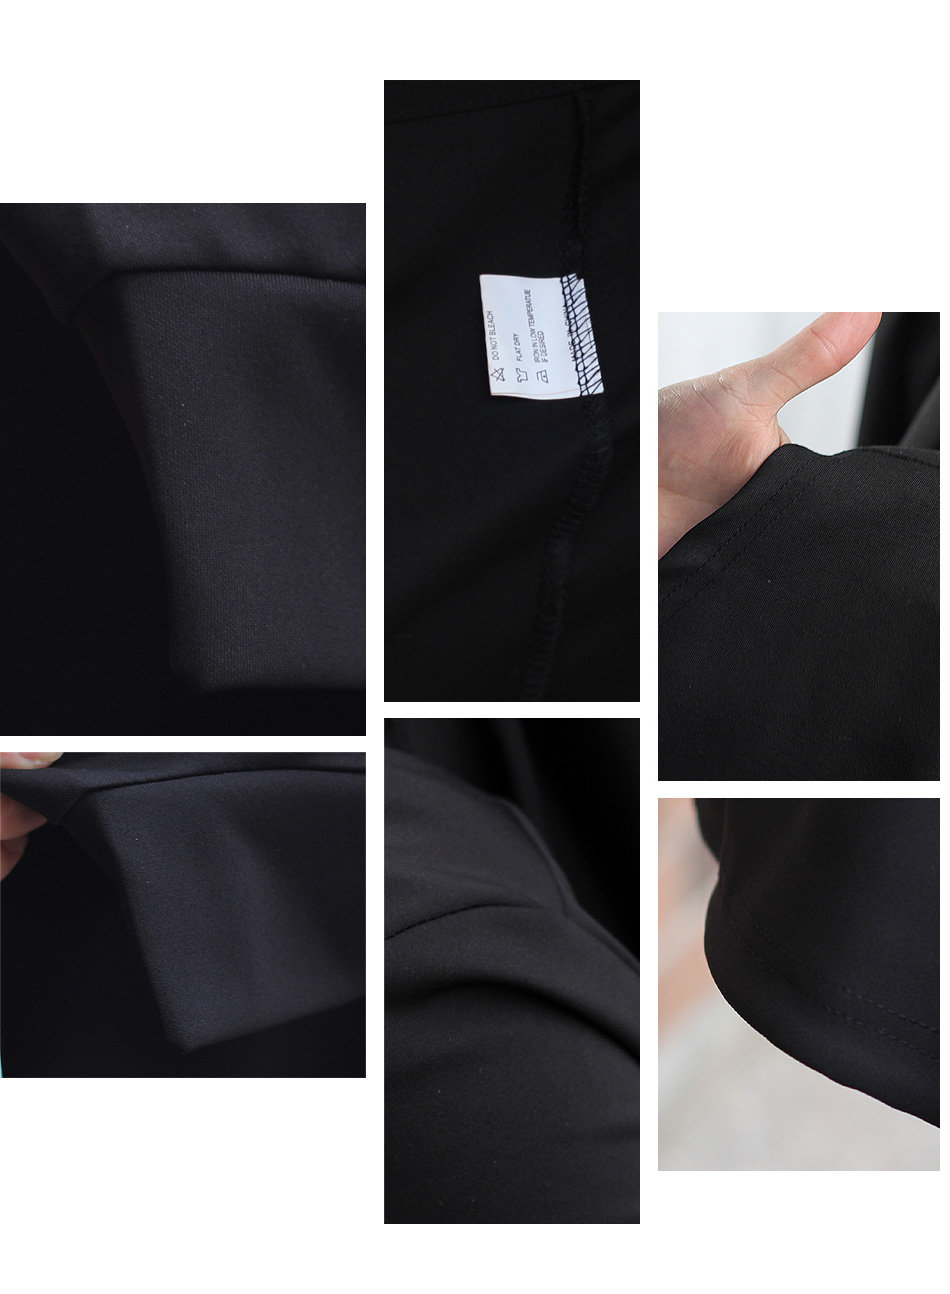 Men-Hooded-Jacket-Black-Gown-Best-Quality-Hip-Hop-Mantle-Hoodie-Sweatshirts-long-Sleeves-Cloak-Coats-32794239599